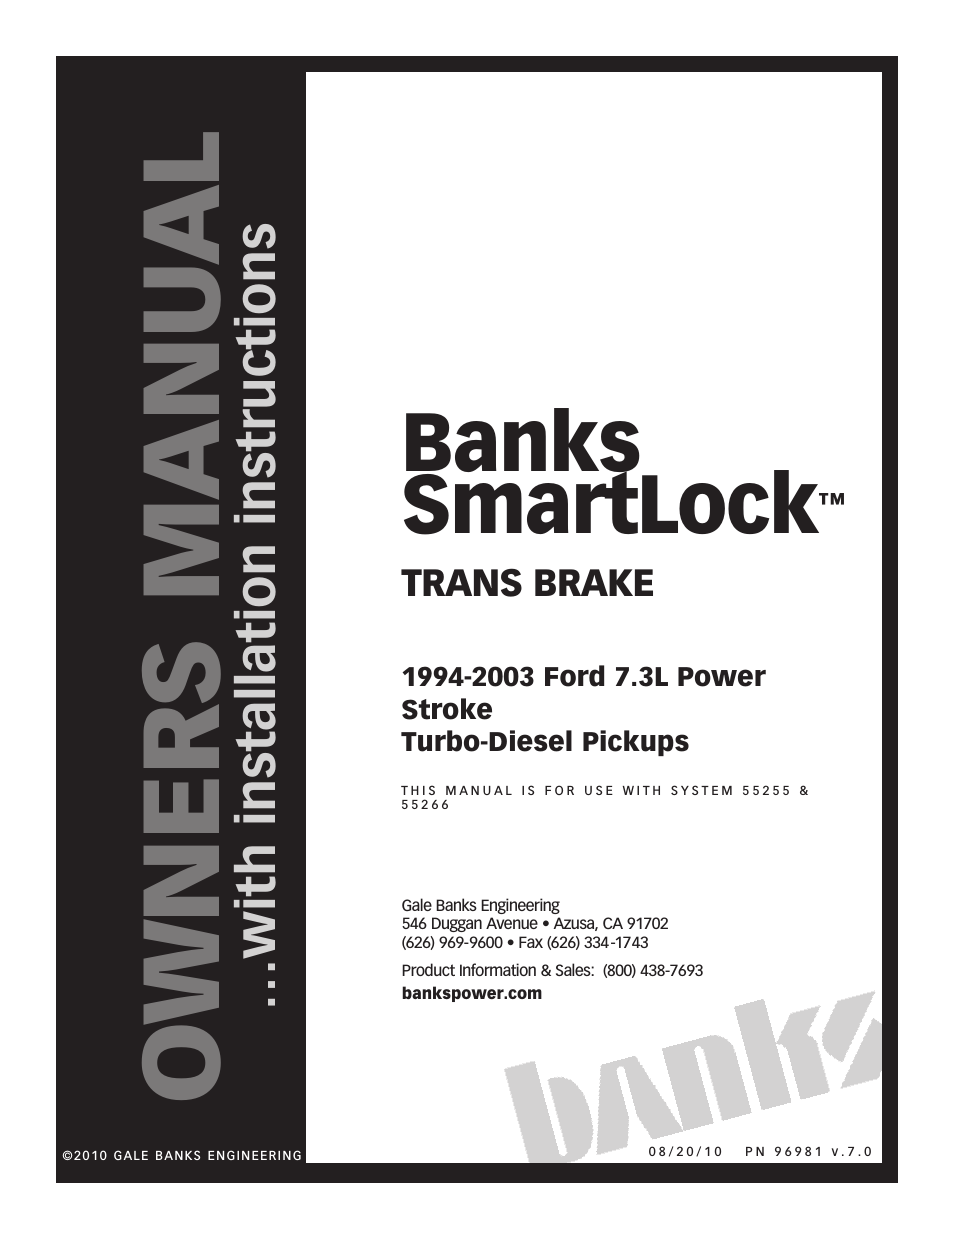 Ford Trucks: (Diesel ’94 - 97 7.3L Power Stroke) Speed Control- SmartLock '94-03